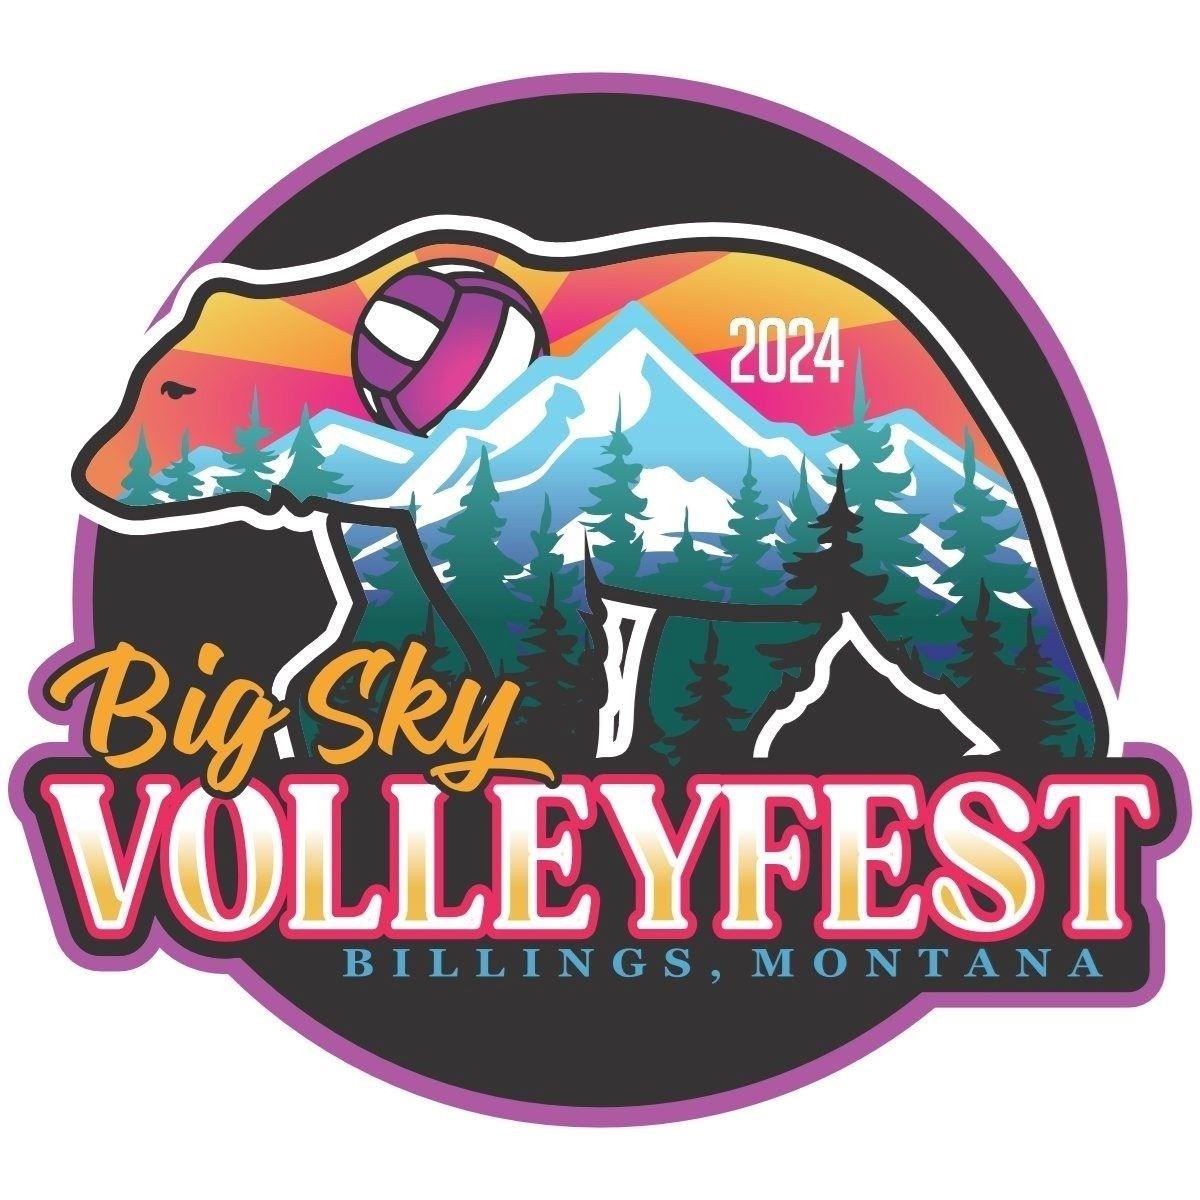 Big Sky Volleyfest